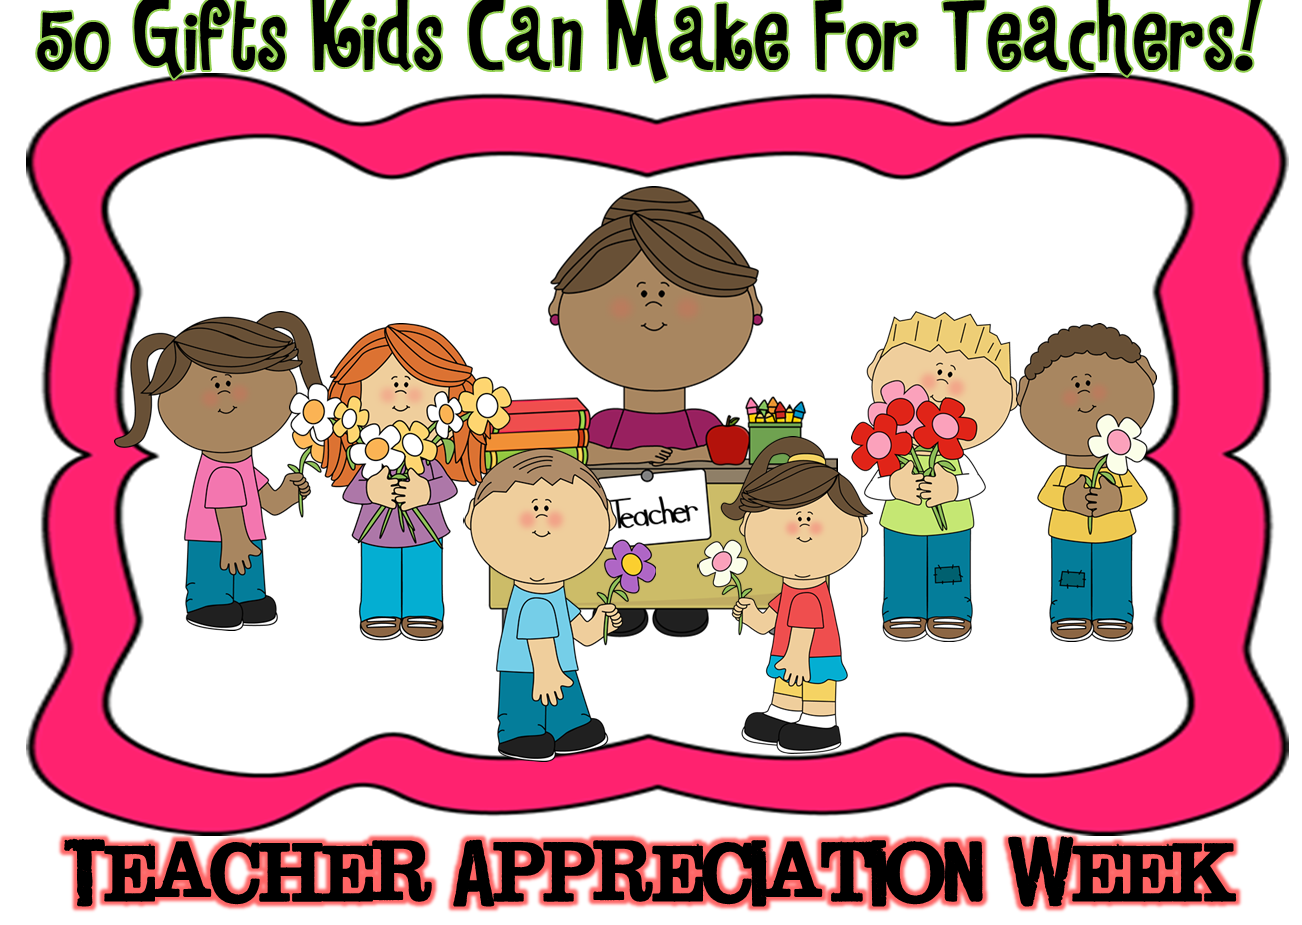 clip art for teacher appreciation week - photo #7